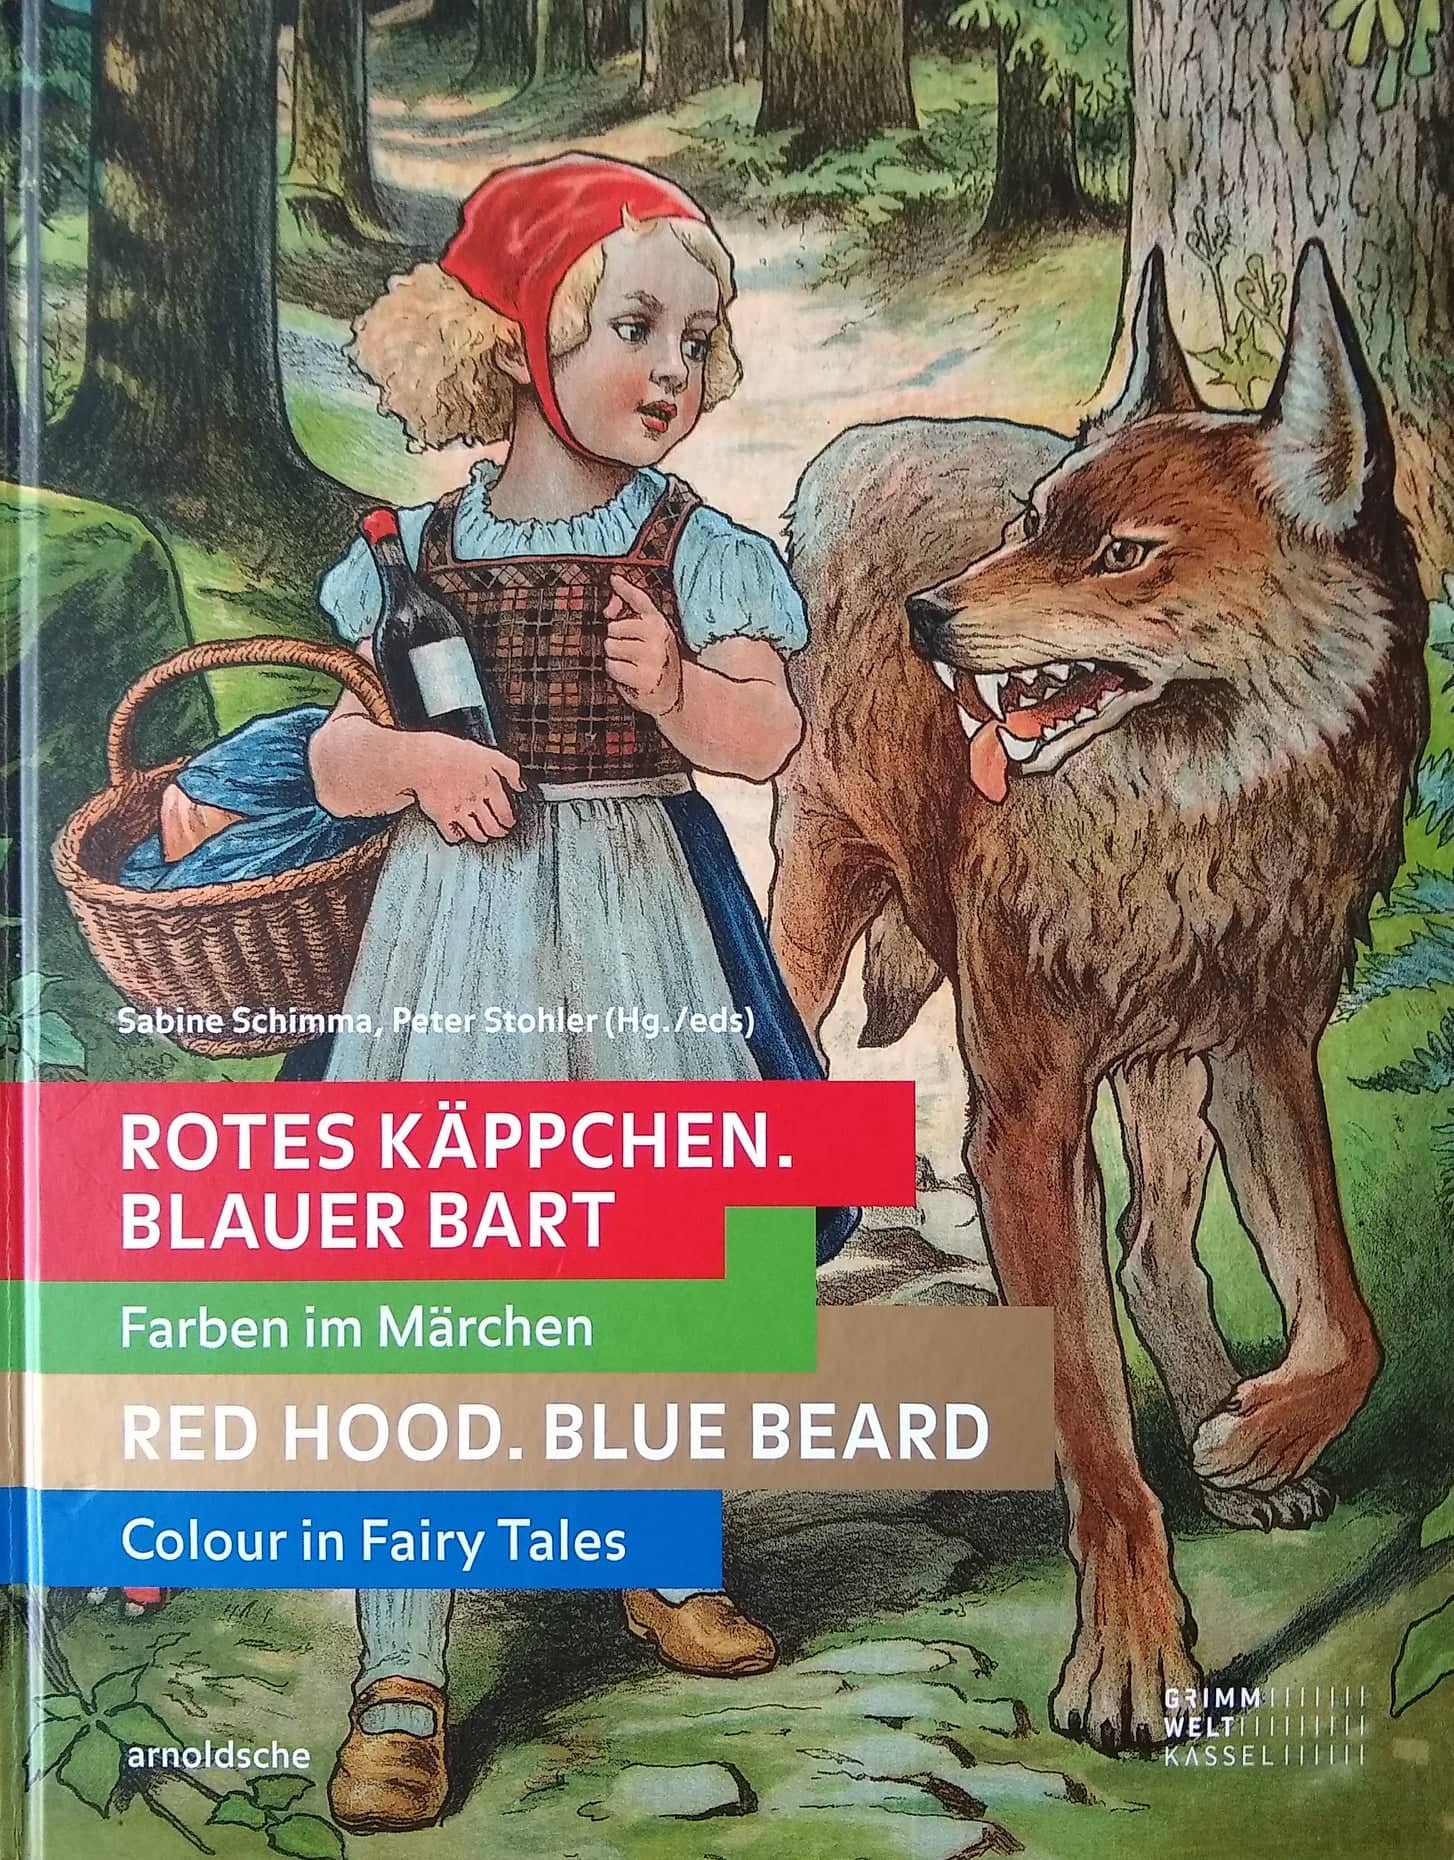 Red Hood Blue Beard Colour in Fairytale